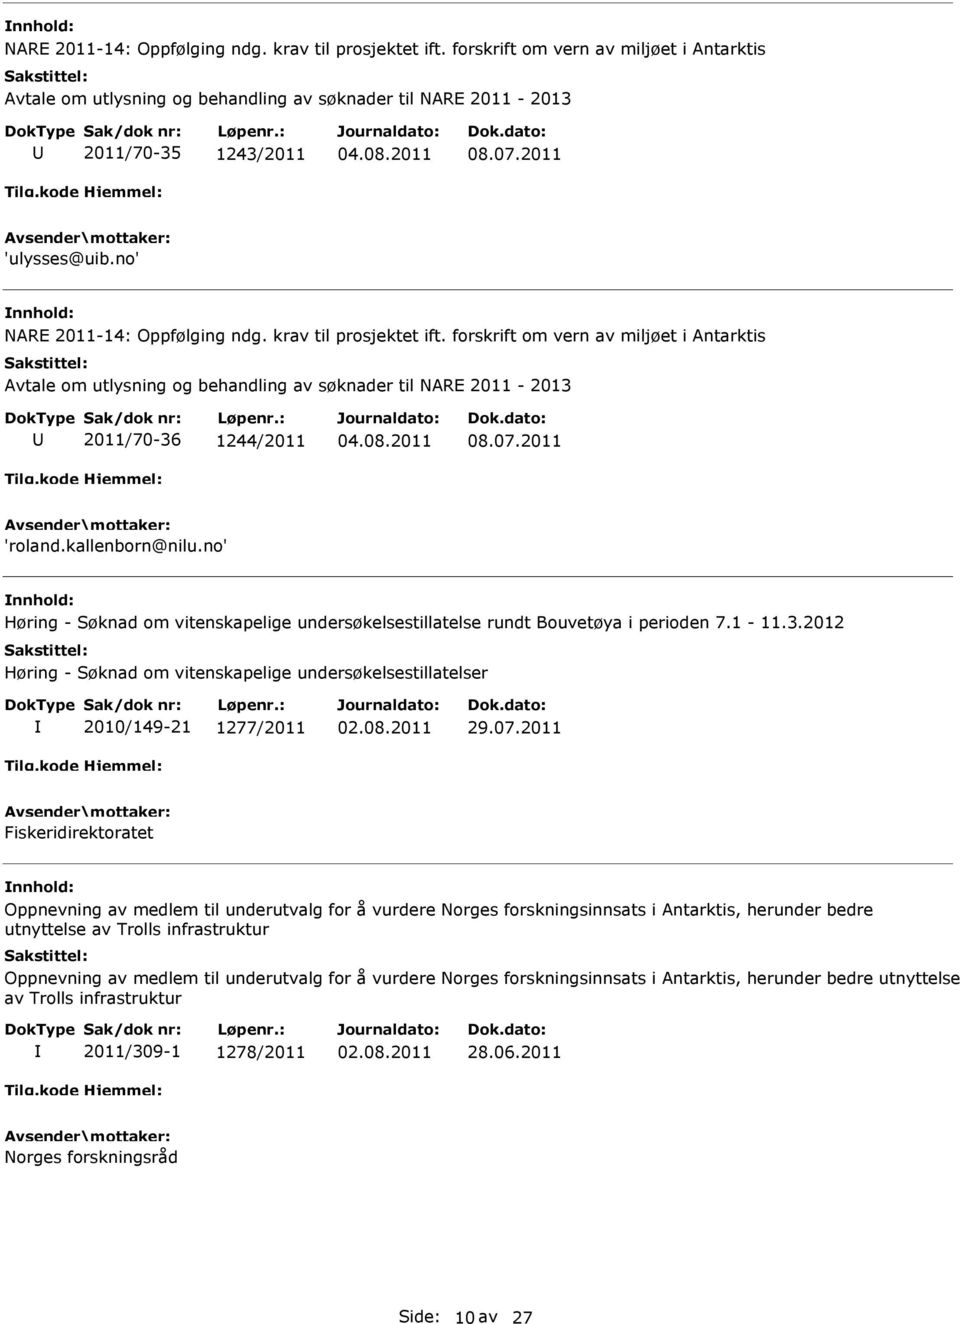 2012 Høring - Søknad om vitenskapelige undersøkelsestillatelser 2010/149-21 1277/2011 02.08.2011 29.07.